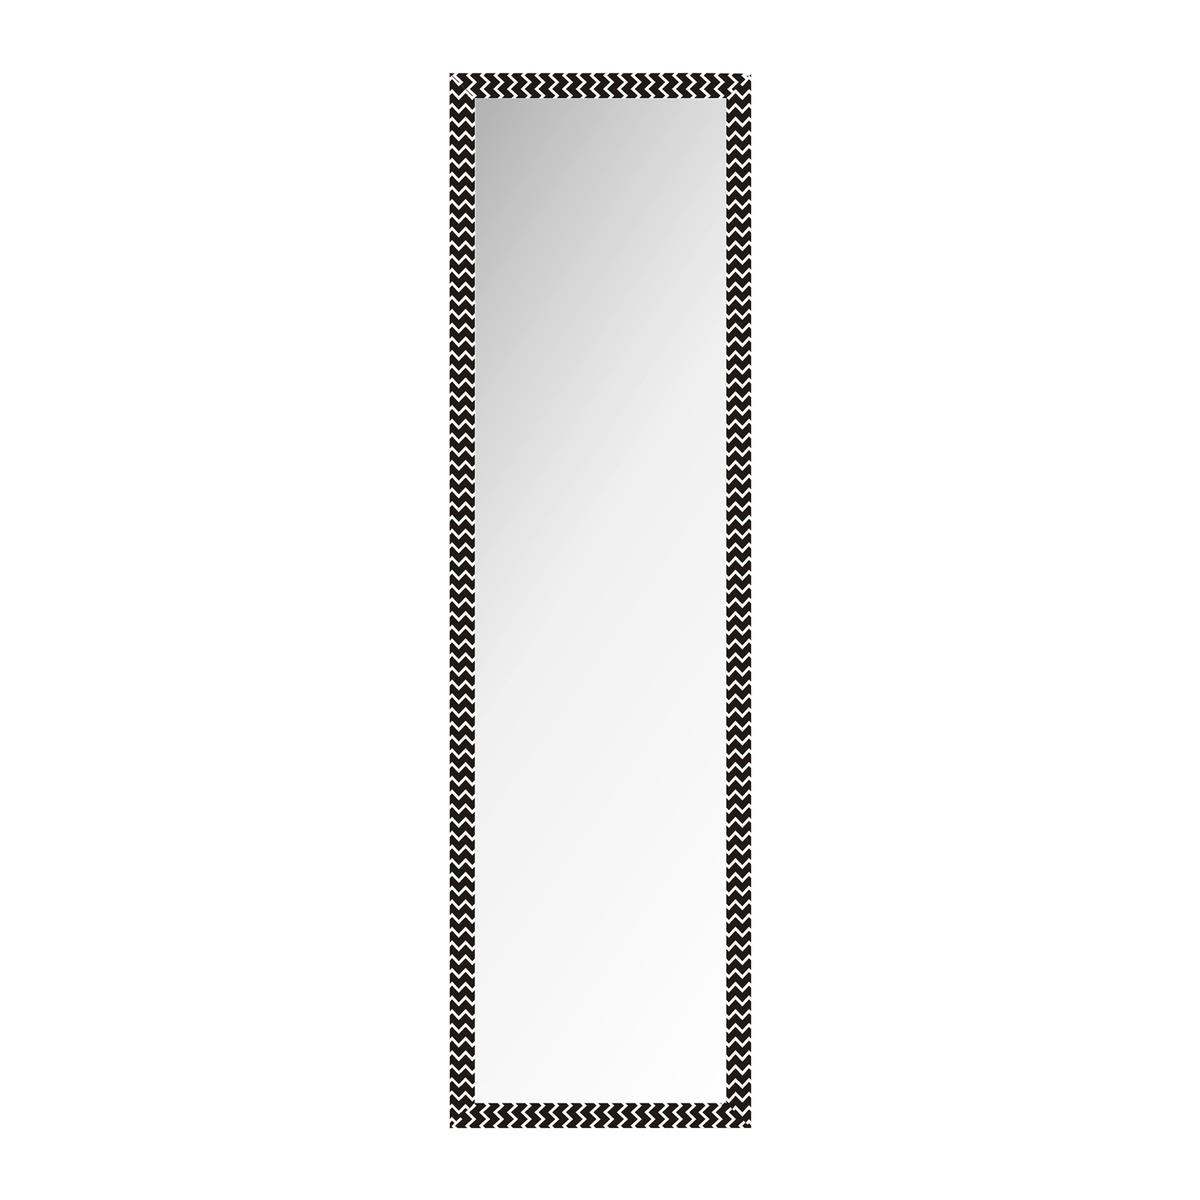 Miroir de porte style graphique - 35 x H 125 cm - Différents coloris